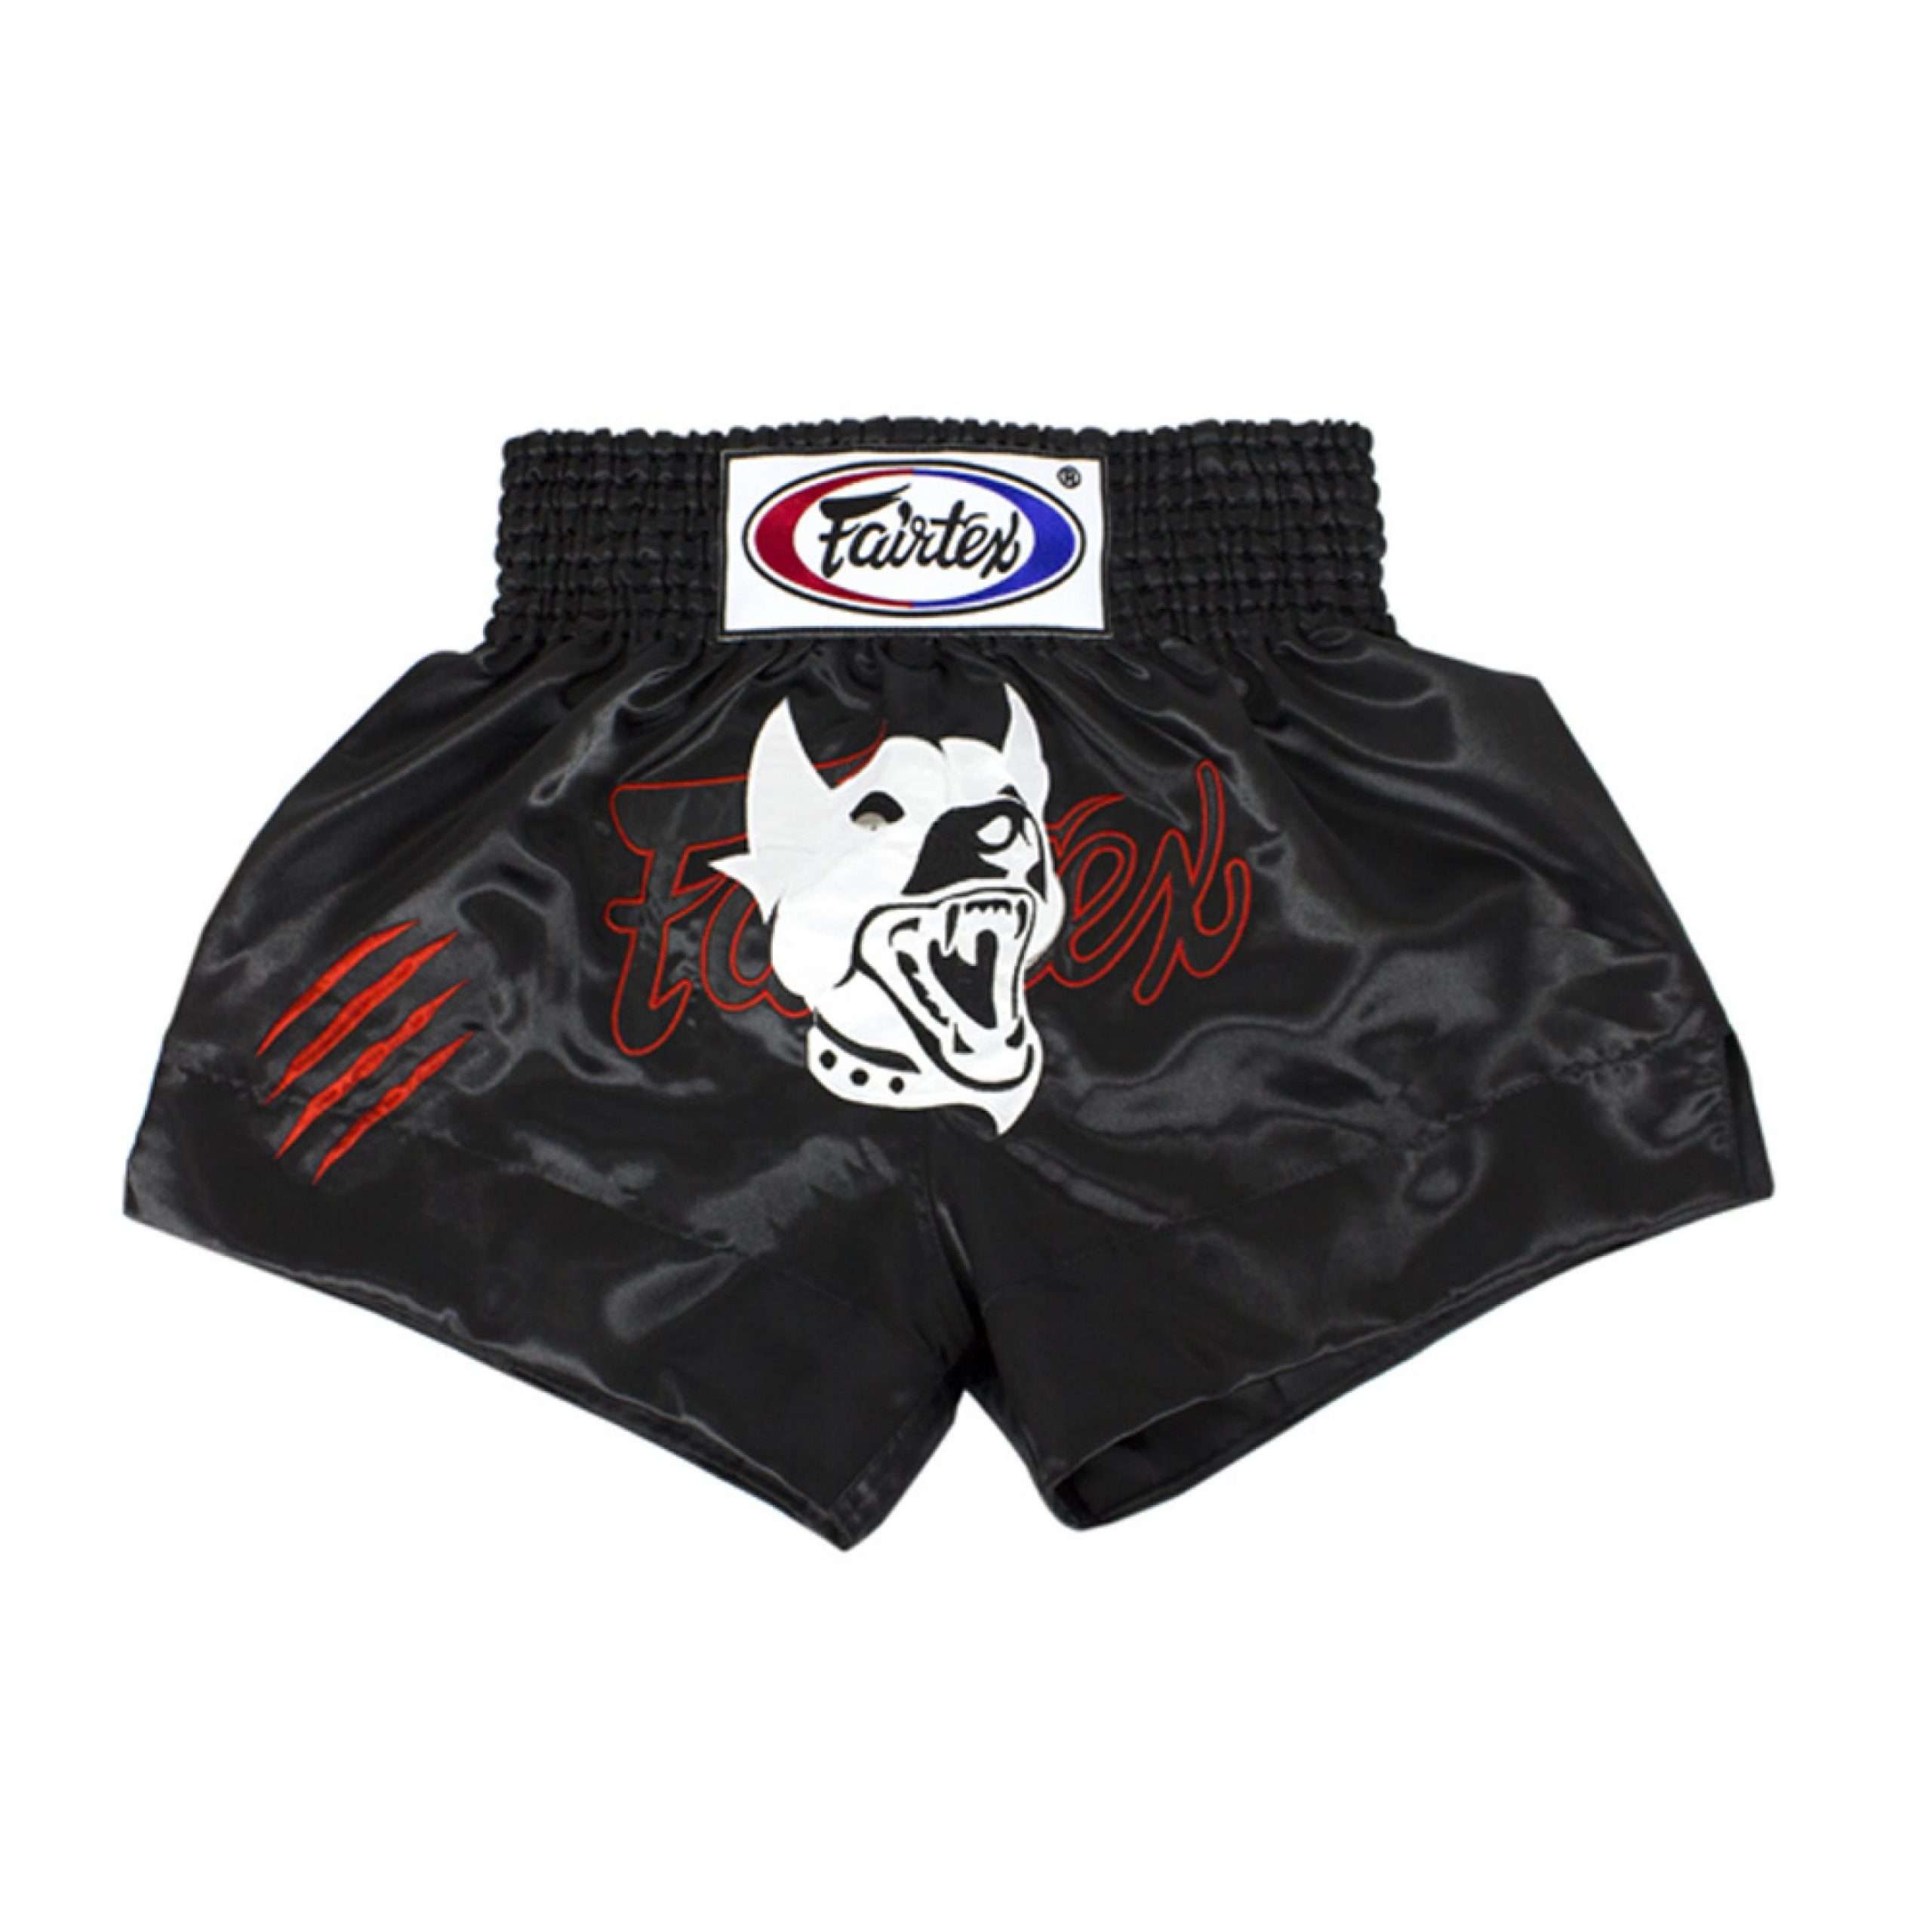 Fairtex Boxing Shorts Black BS0660 - Top Muay Thai Gear